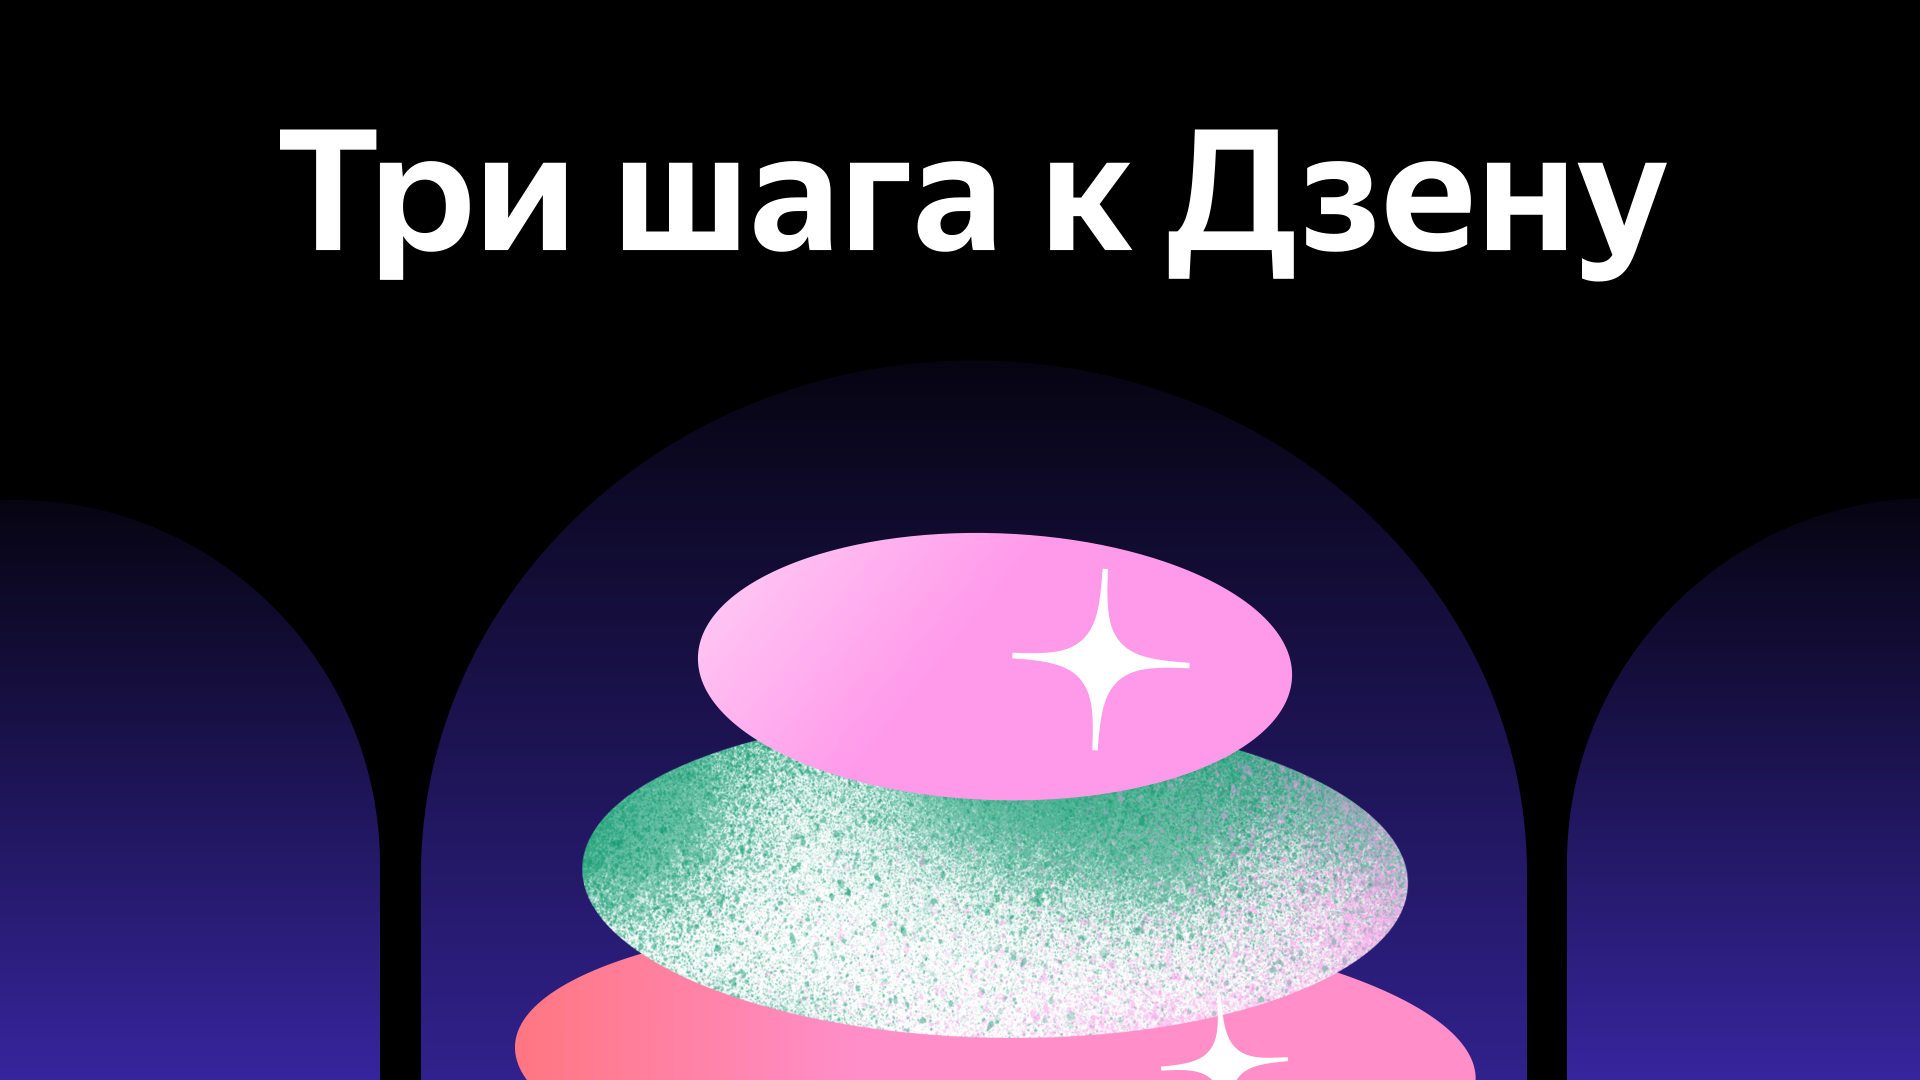 Яндекс.Дзен запускает бесплатный курс для блогеров